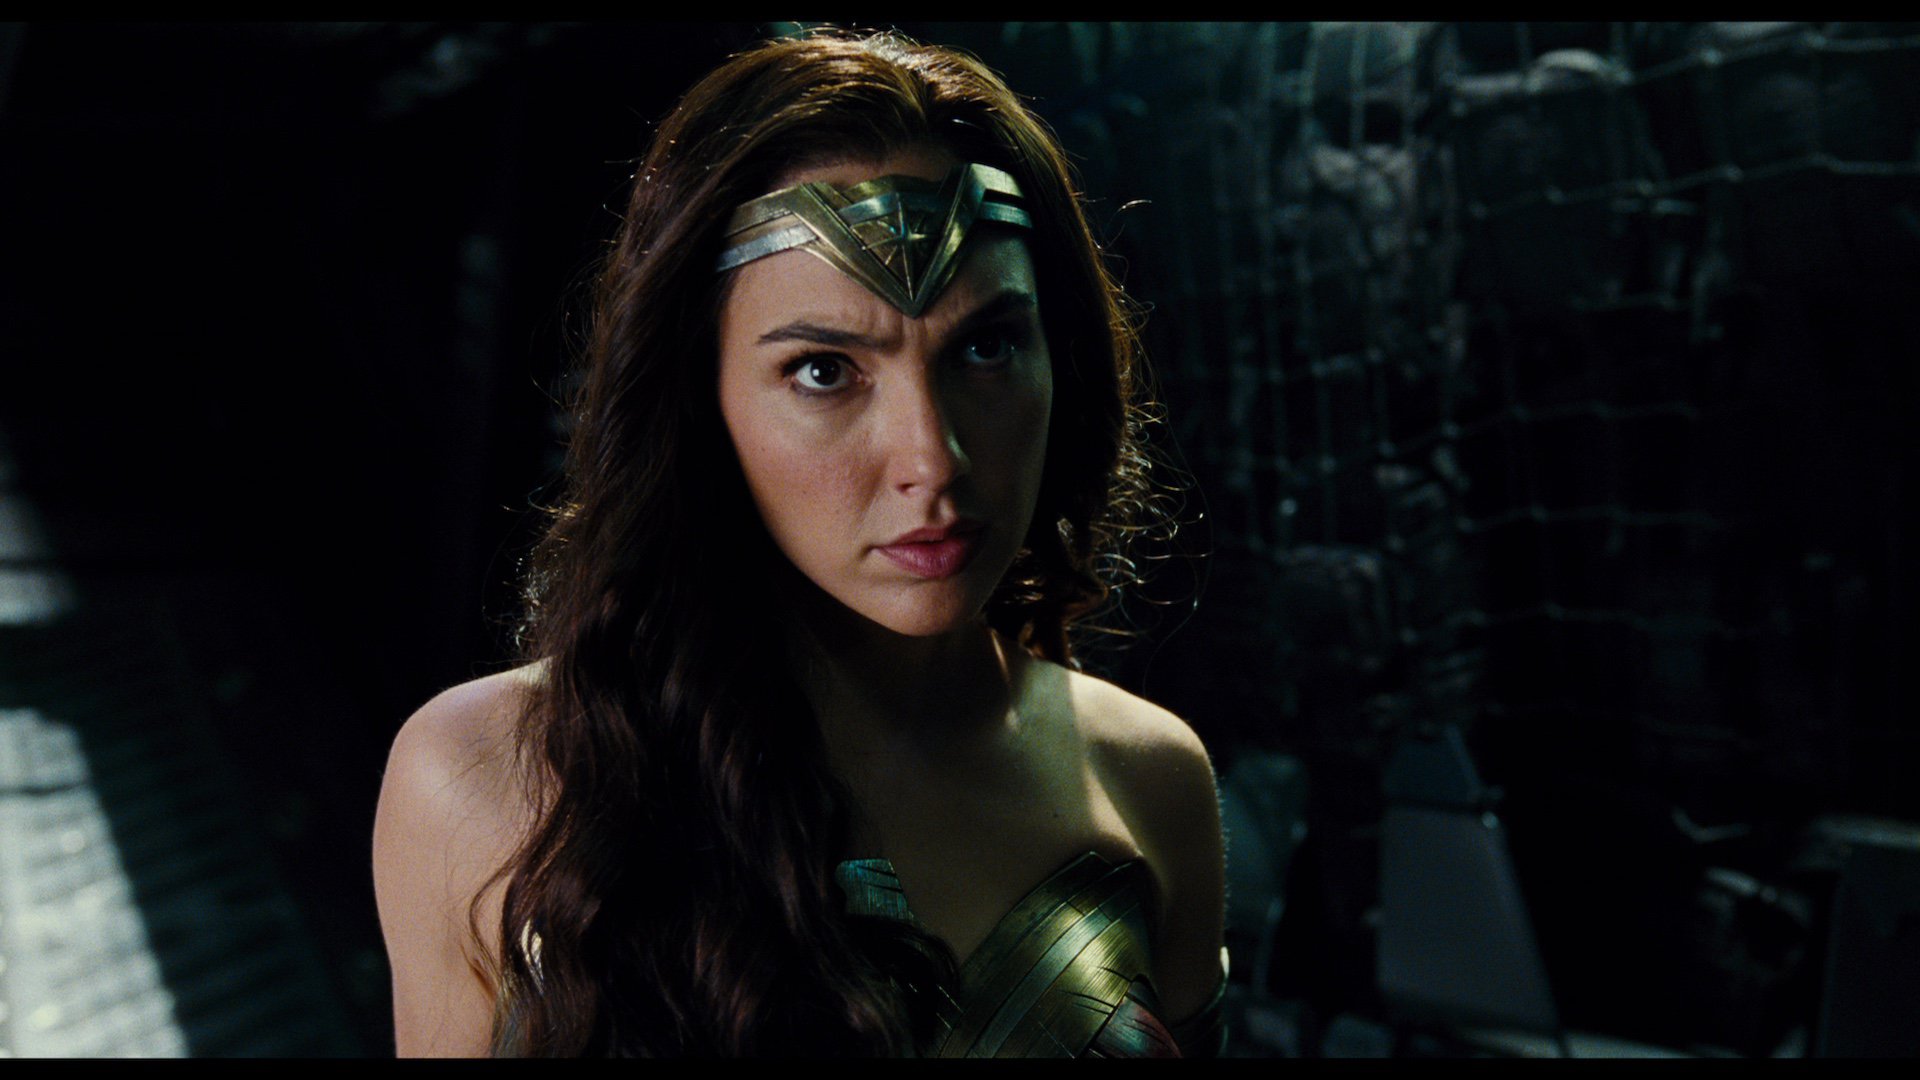 Desktop Wallpaper Justice League Movie Wonder Woman Hd Image Picture Background Bd A